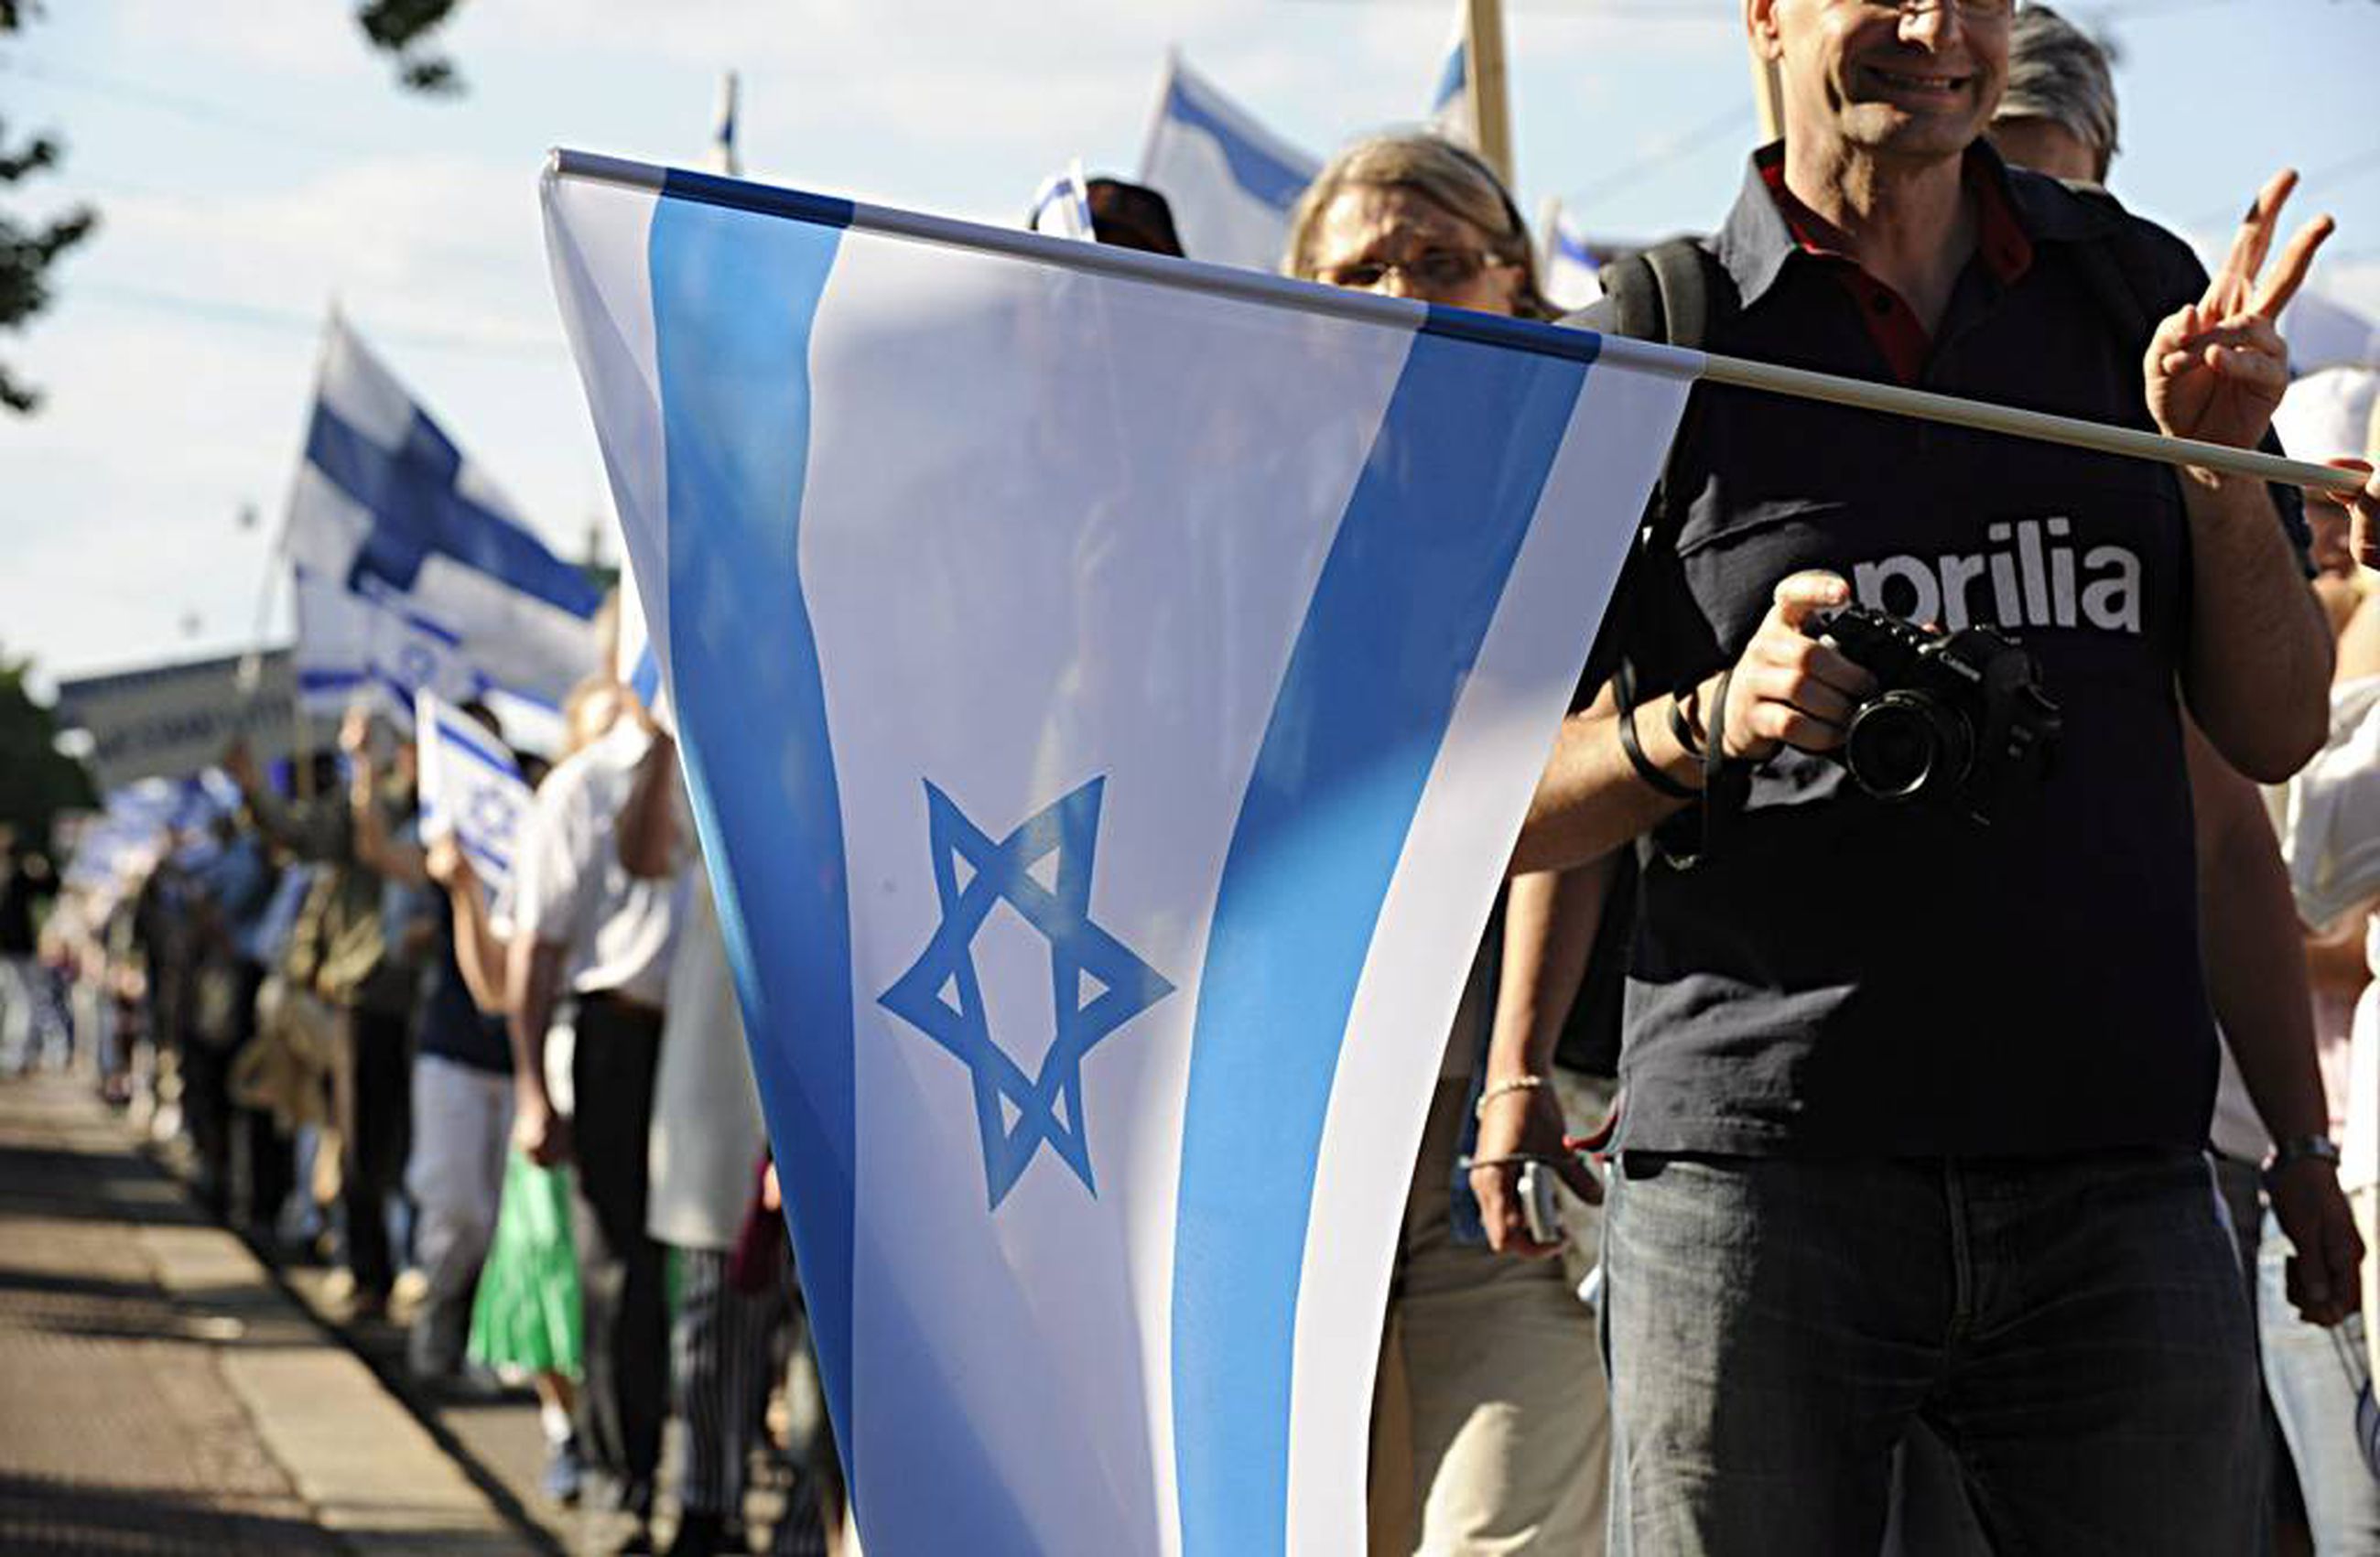 Pari tuhatta mielenosoittajaa marssi Israelin puolesta | Kaleva